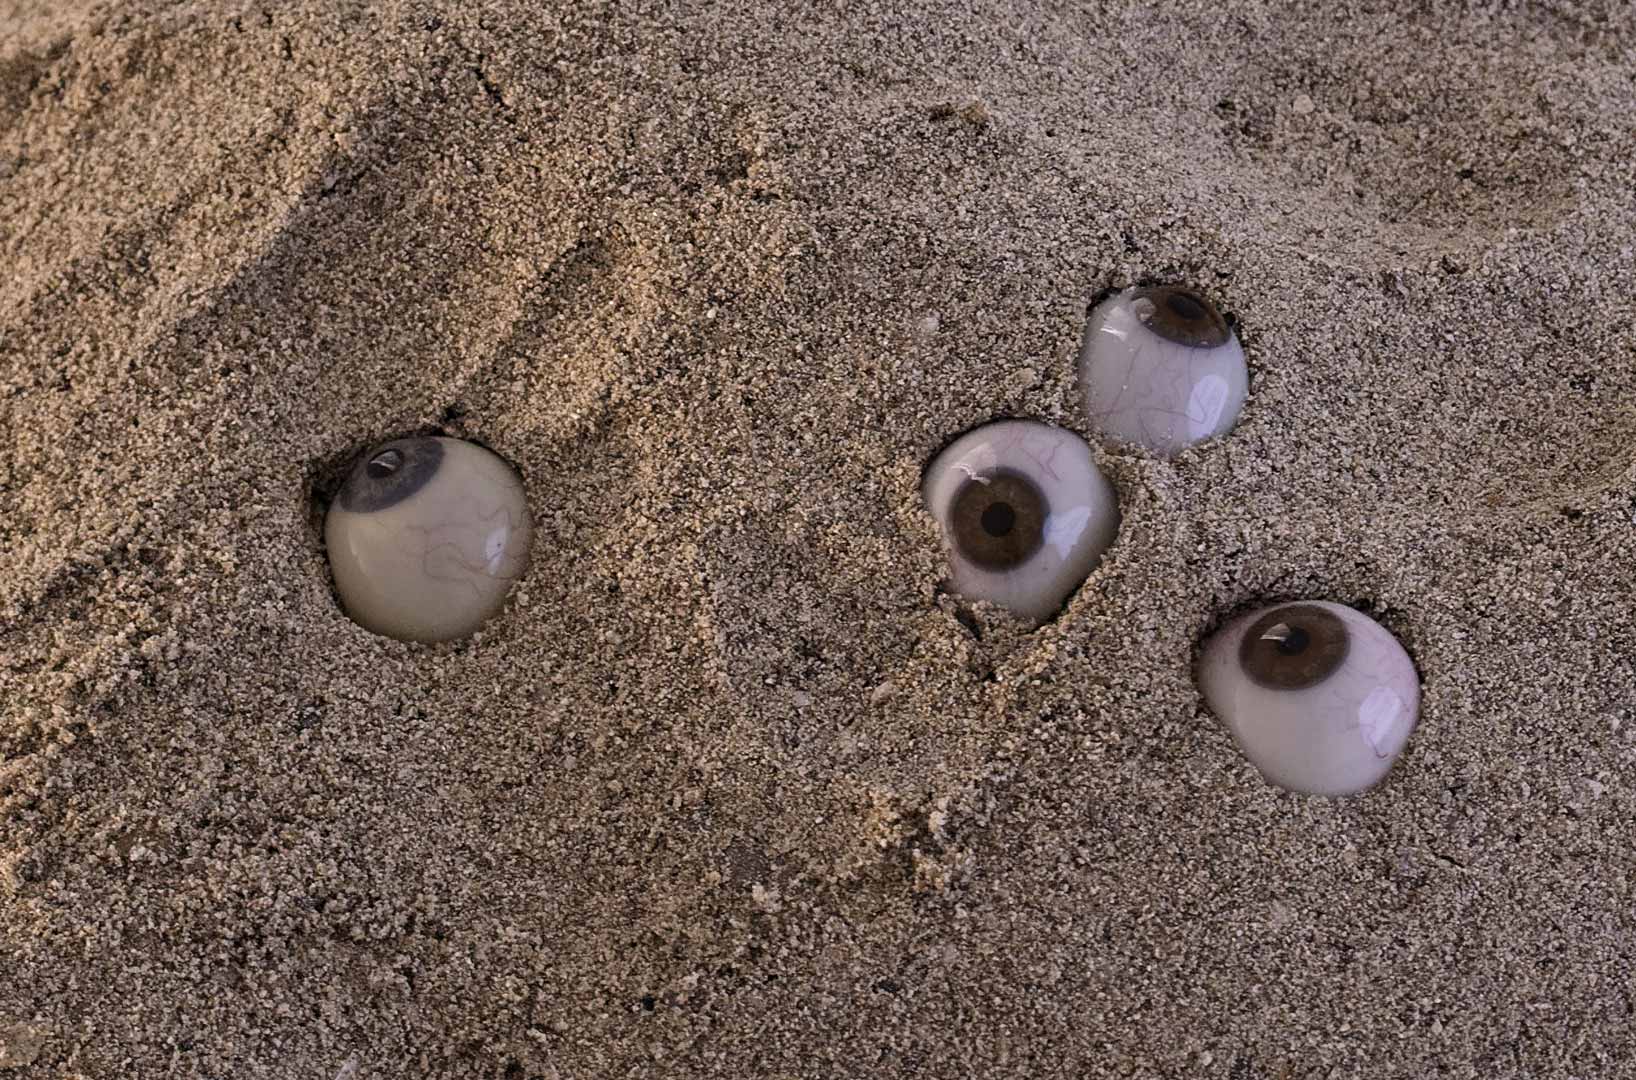 Vue de l'installation intitulée " Les tombeaux innocents". Focus sur le sable. Des yeux de verre de différentes couleurs hésitent entre surgissement et enlisement. Ils semblent regarder dans différentes direction.